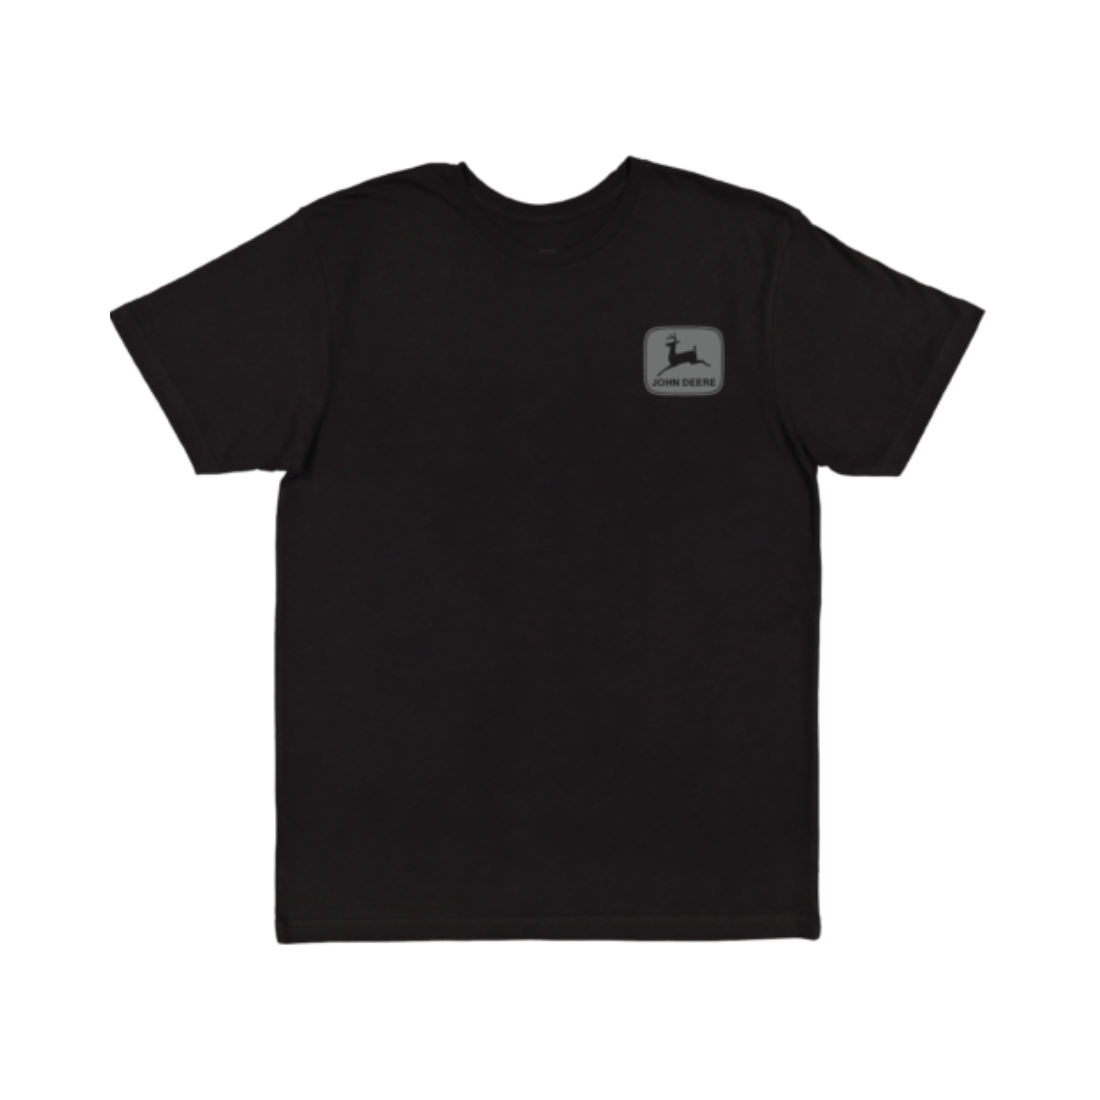 Nothing Runs like Tshirt 3XL Black Mens Tshirt by John Deere | The Bloke Shop